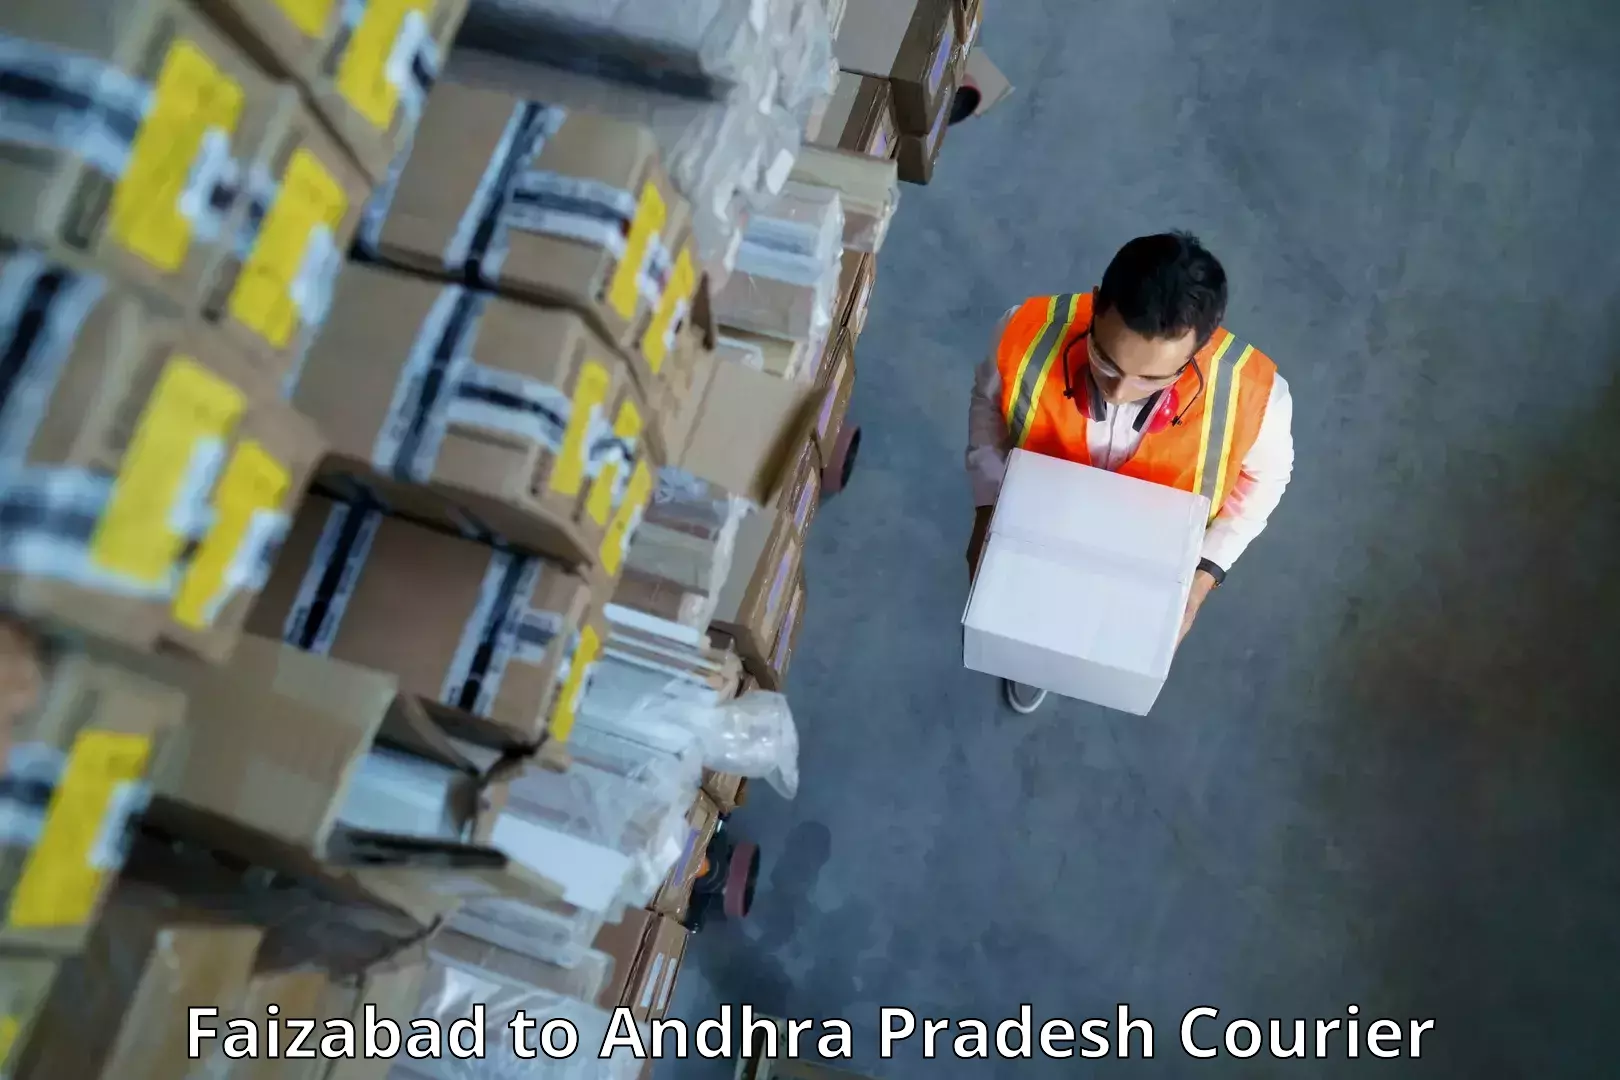 24/7 courier service Faizabad to Andhra Pradesh